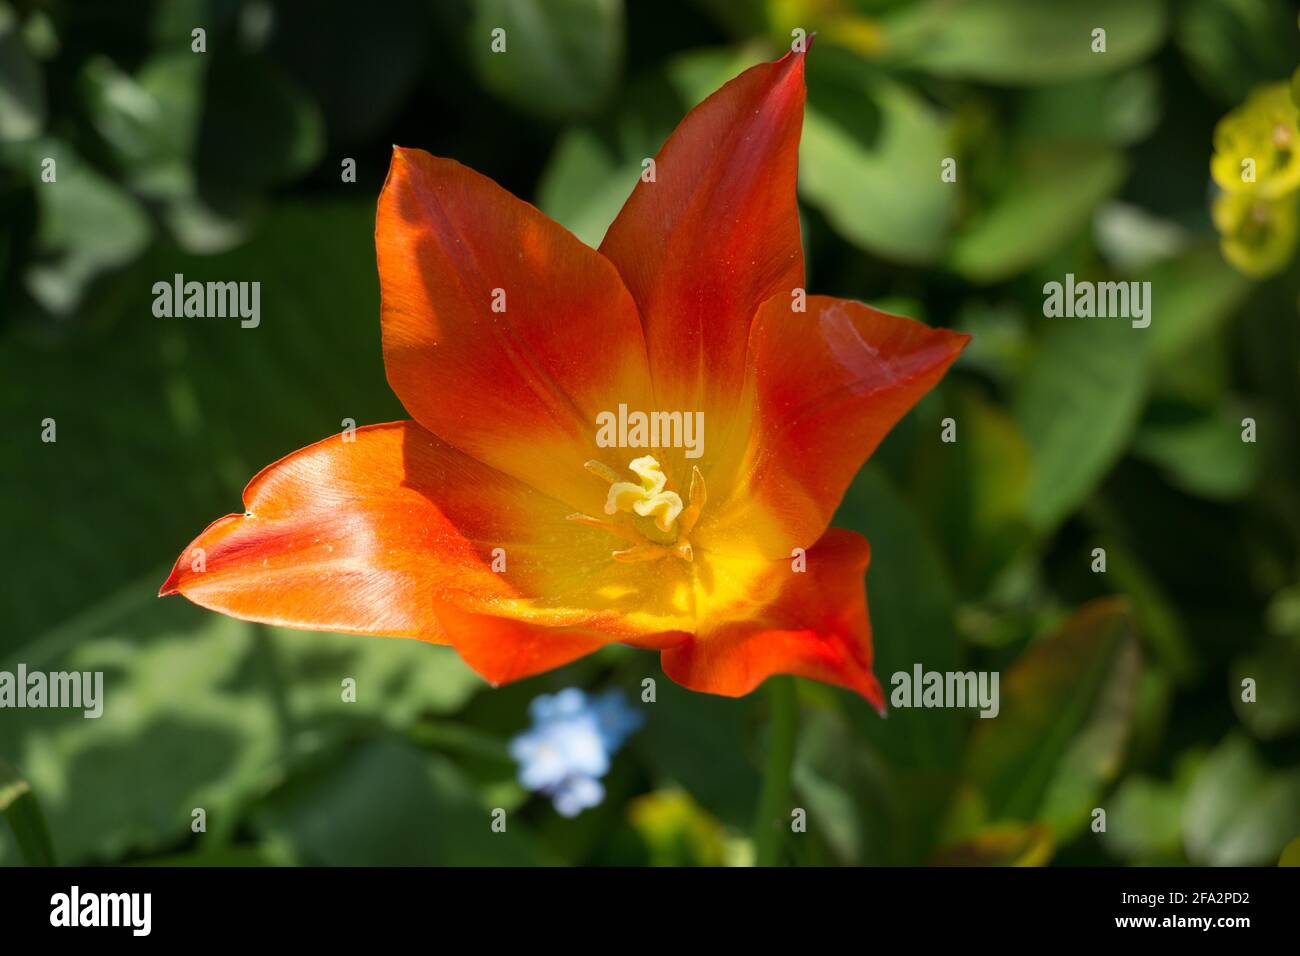 Un singolo tulipano arancione brillante, Tulipa ballerina, tulipano giglio fiorito, che fiorisce al sole primaverile, primo piano con stigma, resistenza e antere Foto Stock